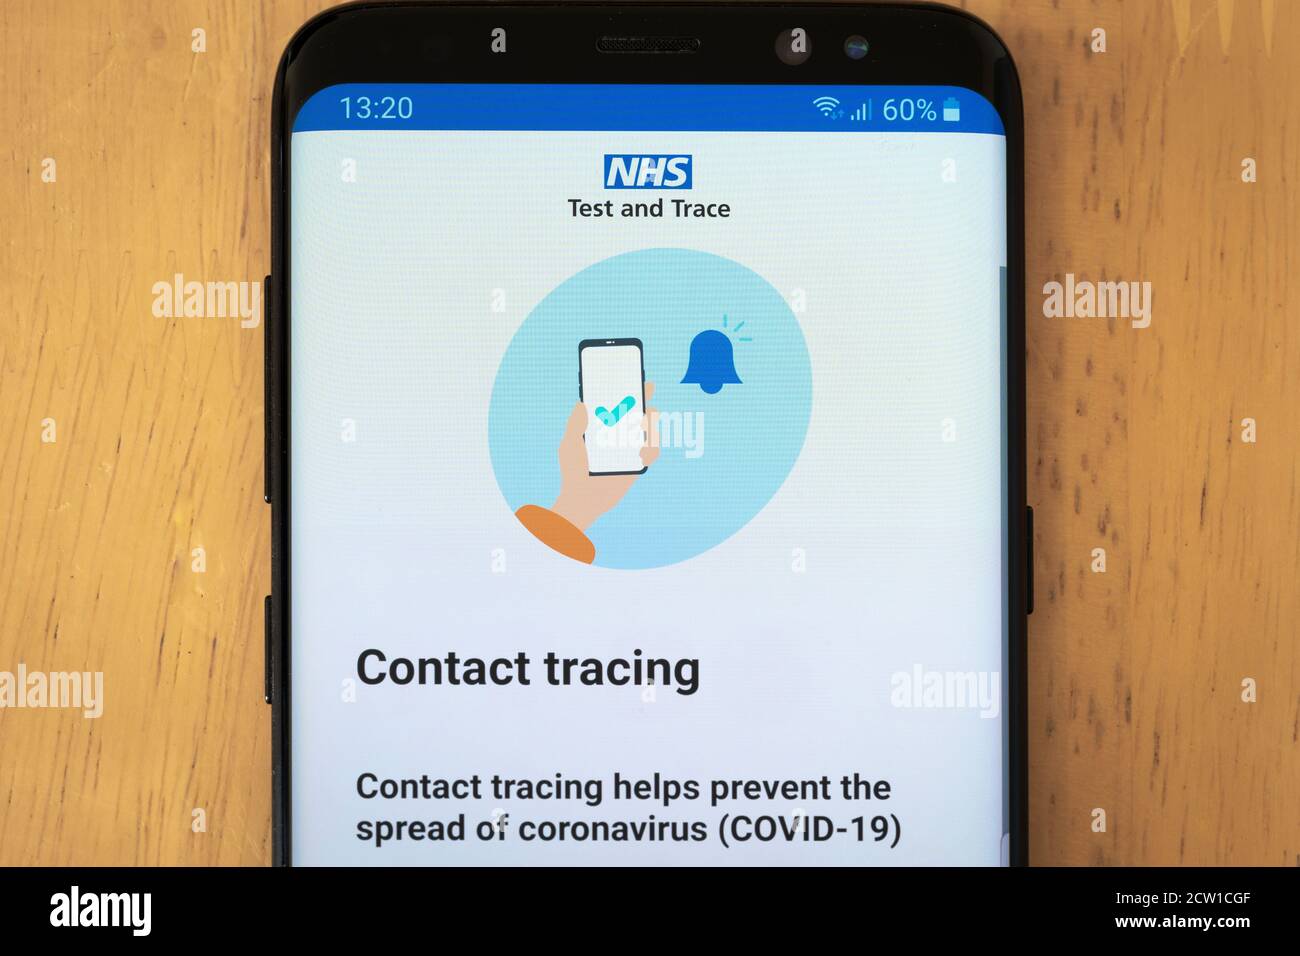 Ein Smartphone-Bildschirm, auf dem die NHS Test and Trace App angezeigt wird Für Kontaktverfolgung und Test und Trace in England für Die Covid-19 Coronavirus-Pandemie Stockfoto